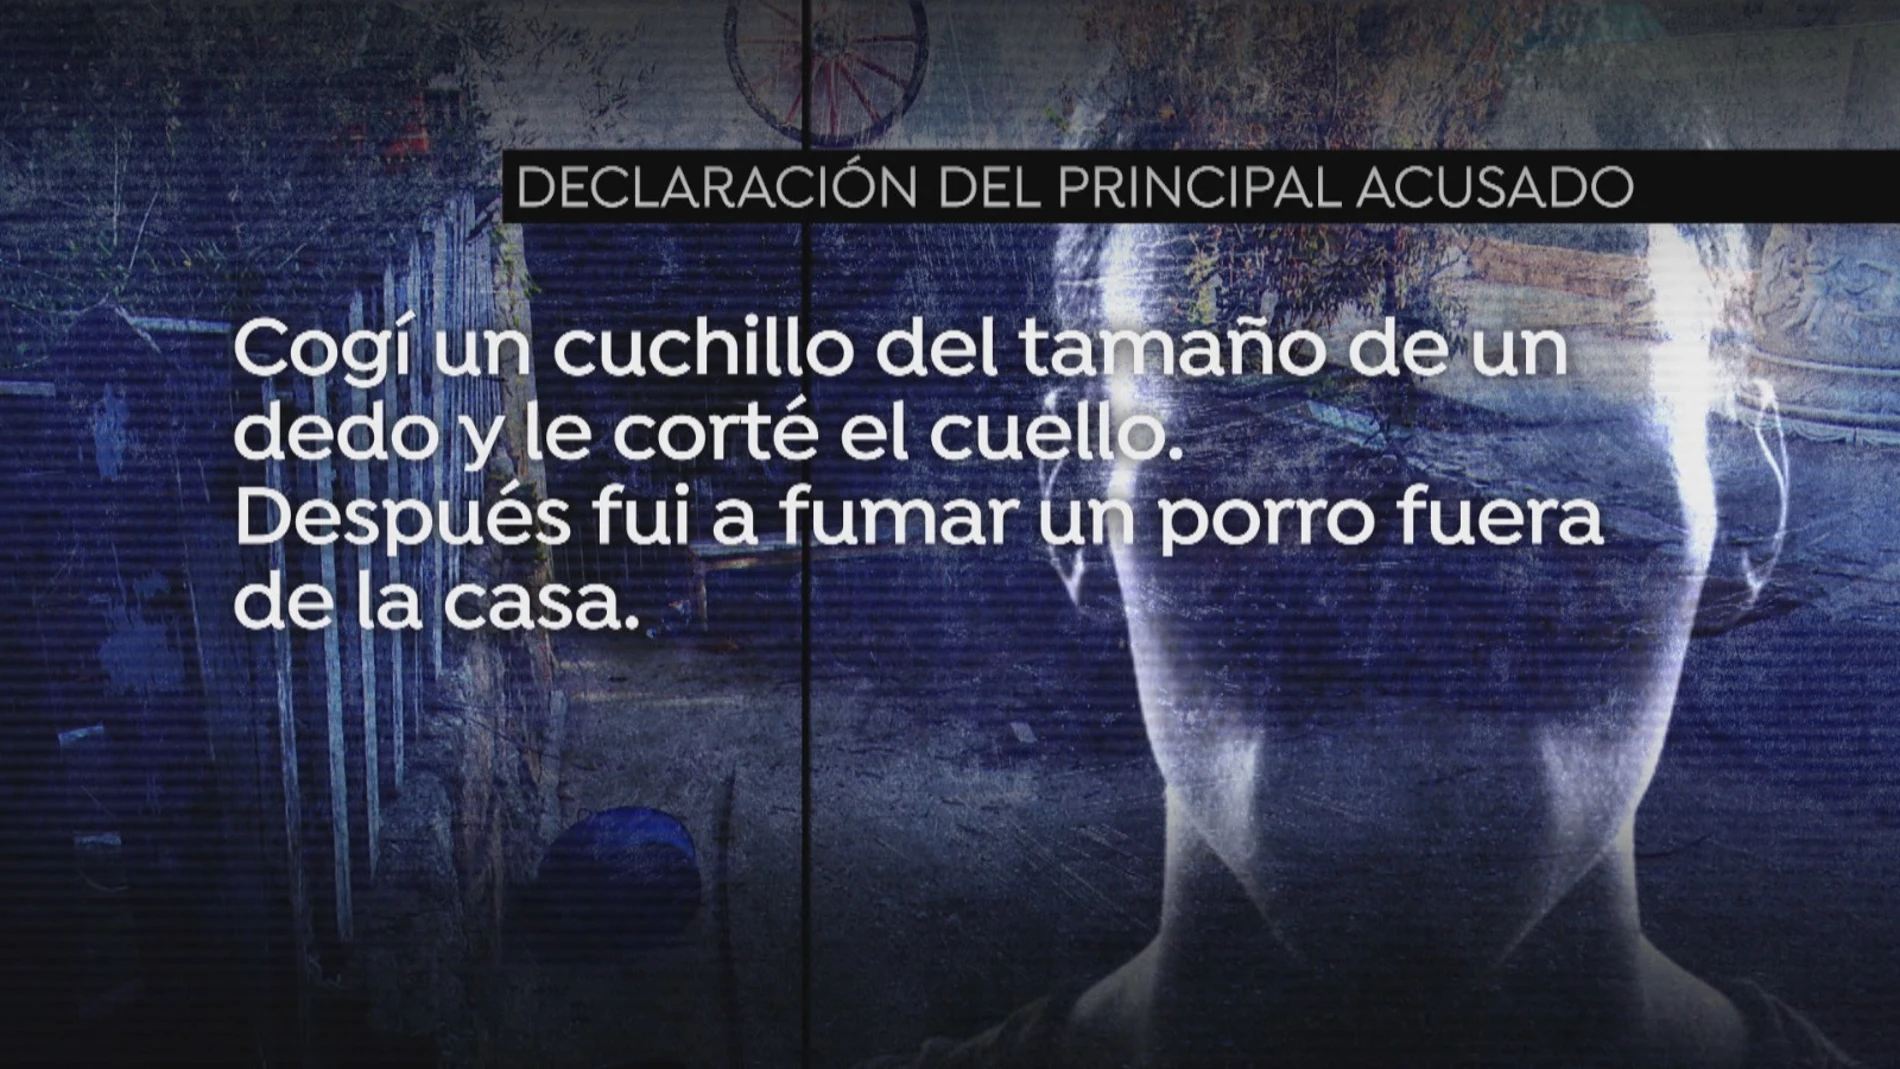  La declaración de 'El loco' por el crimen de la mujer descuartizada en Chapinería: "Cogí un cuchillo y le corté el cuello"